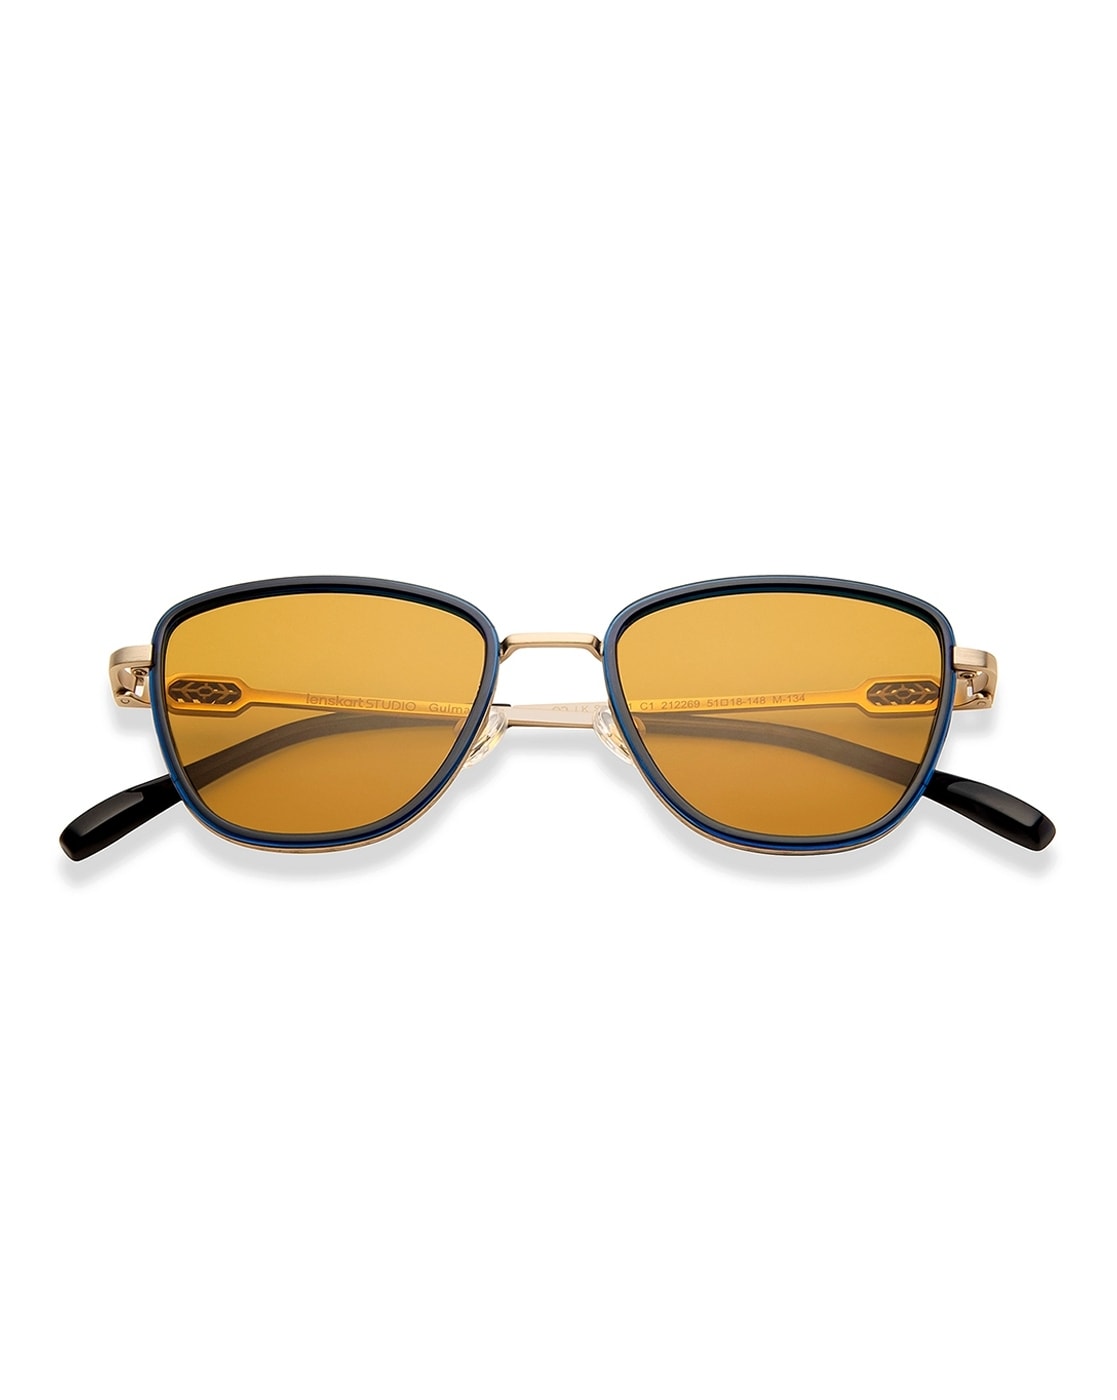 5 Best Selling Sunglasses On Lenskart Right Now | Lenskart Stylist | # Lenskart - YouTube